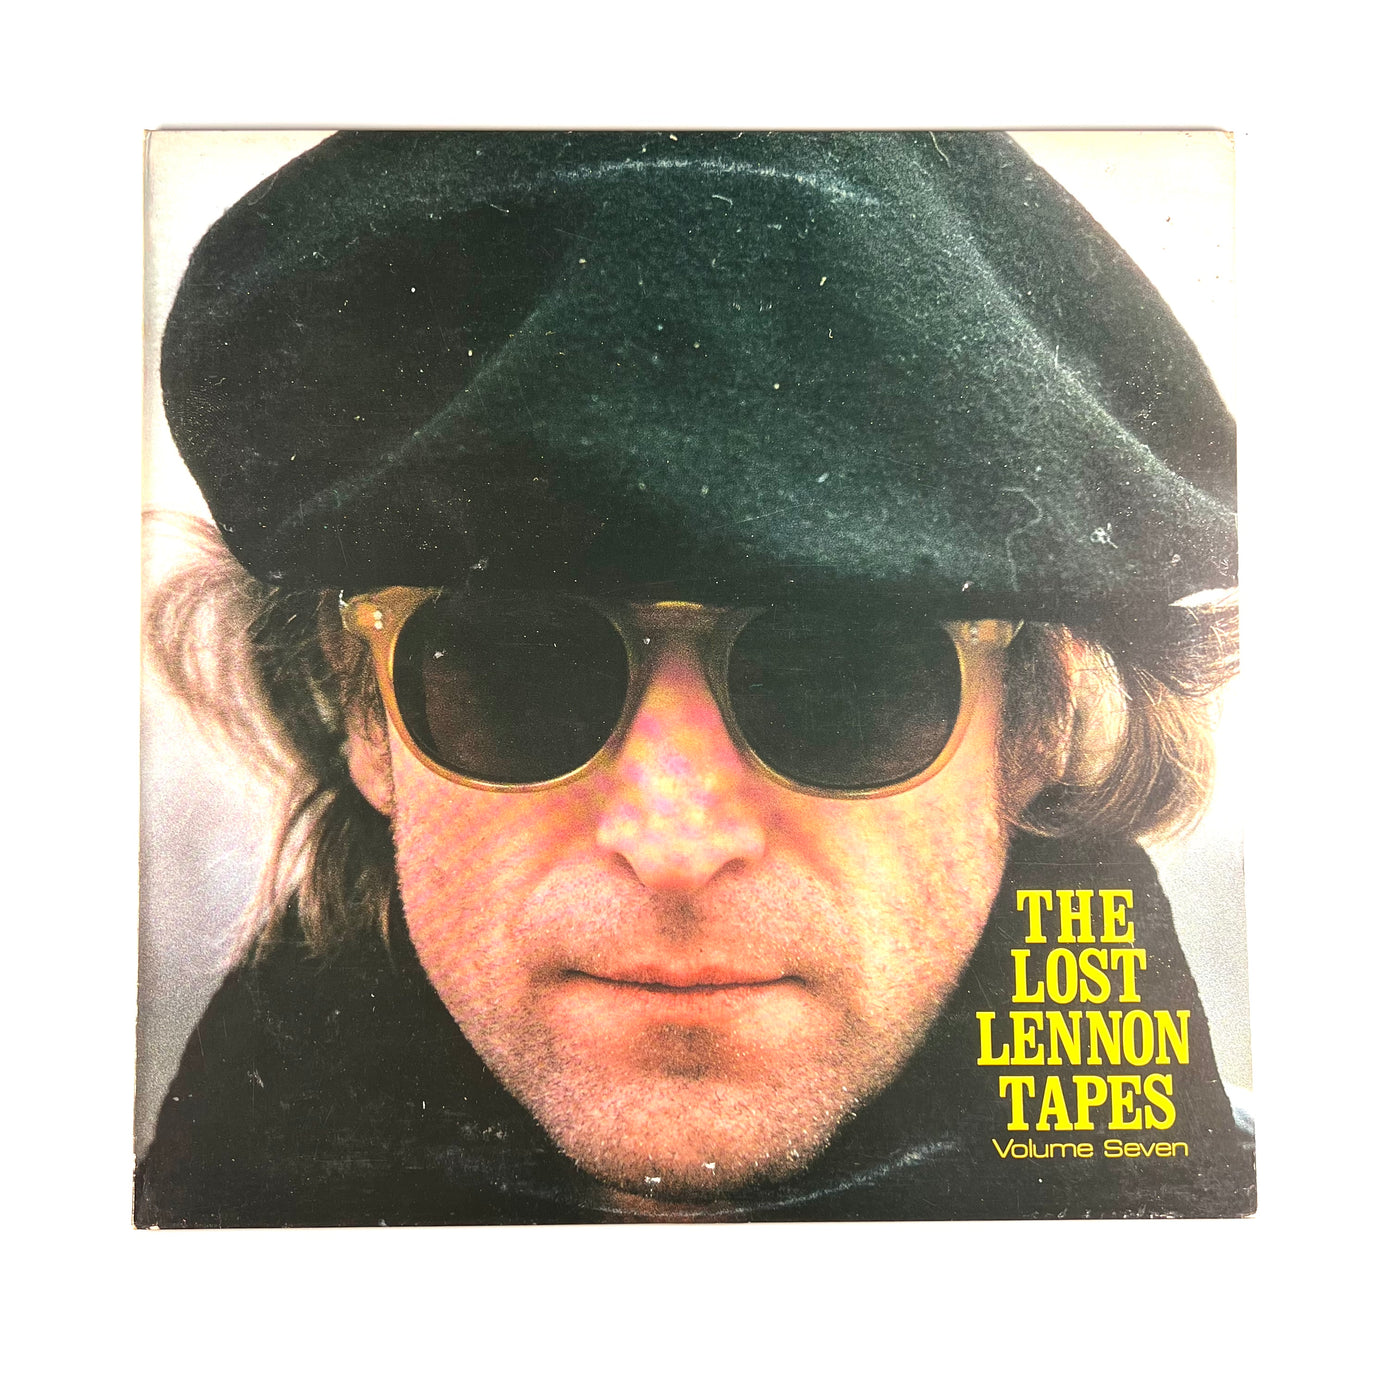 John Lennon - The Lost Lennon Tapes Volume Seven